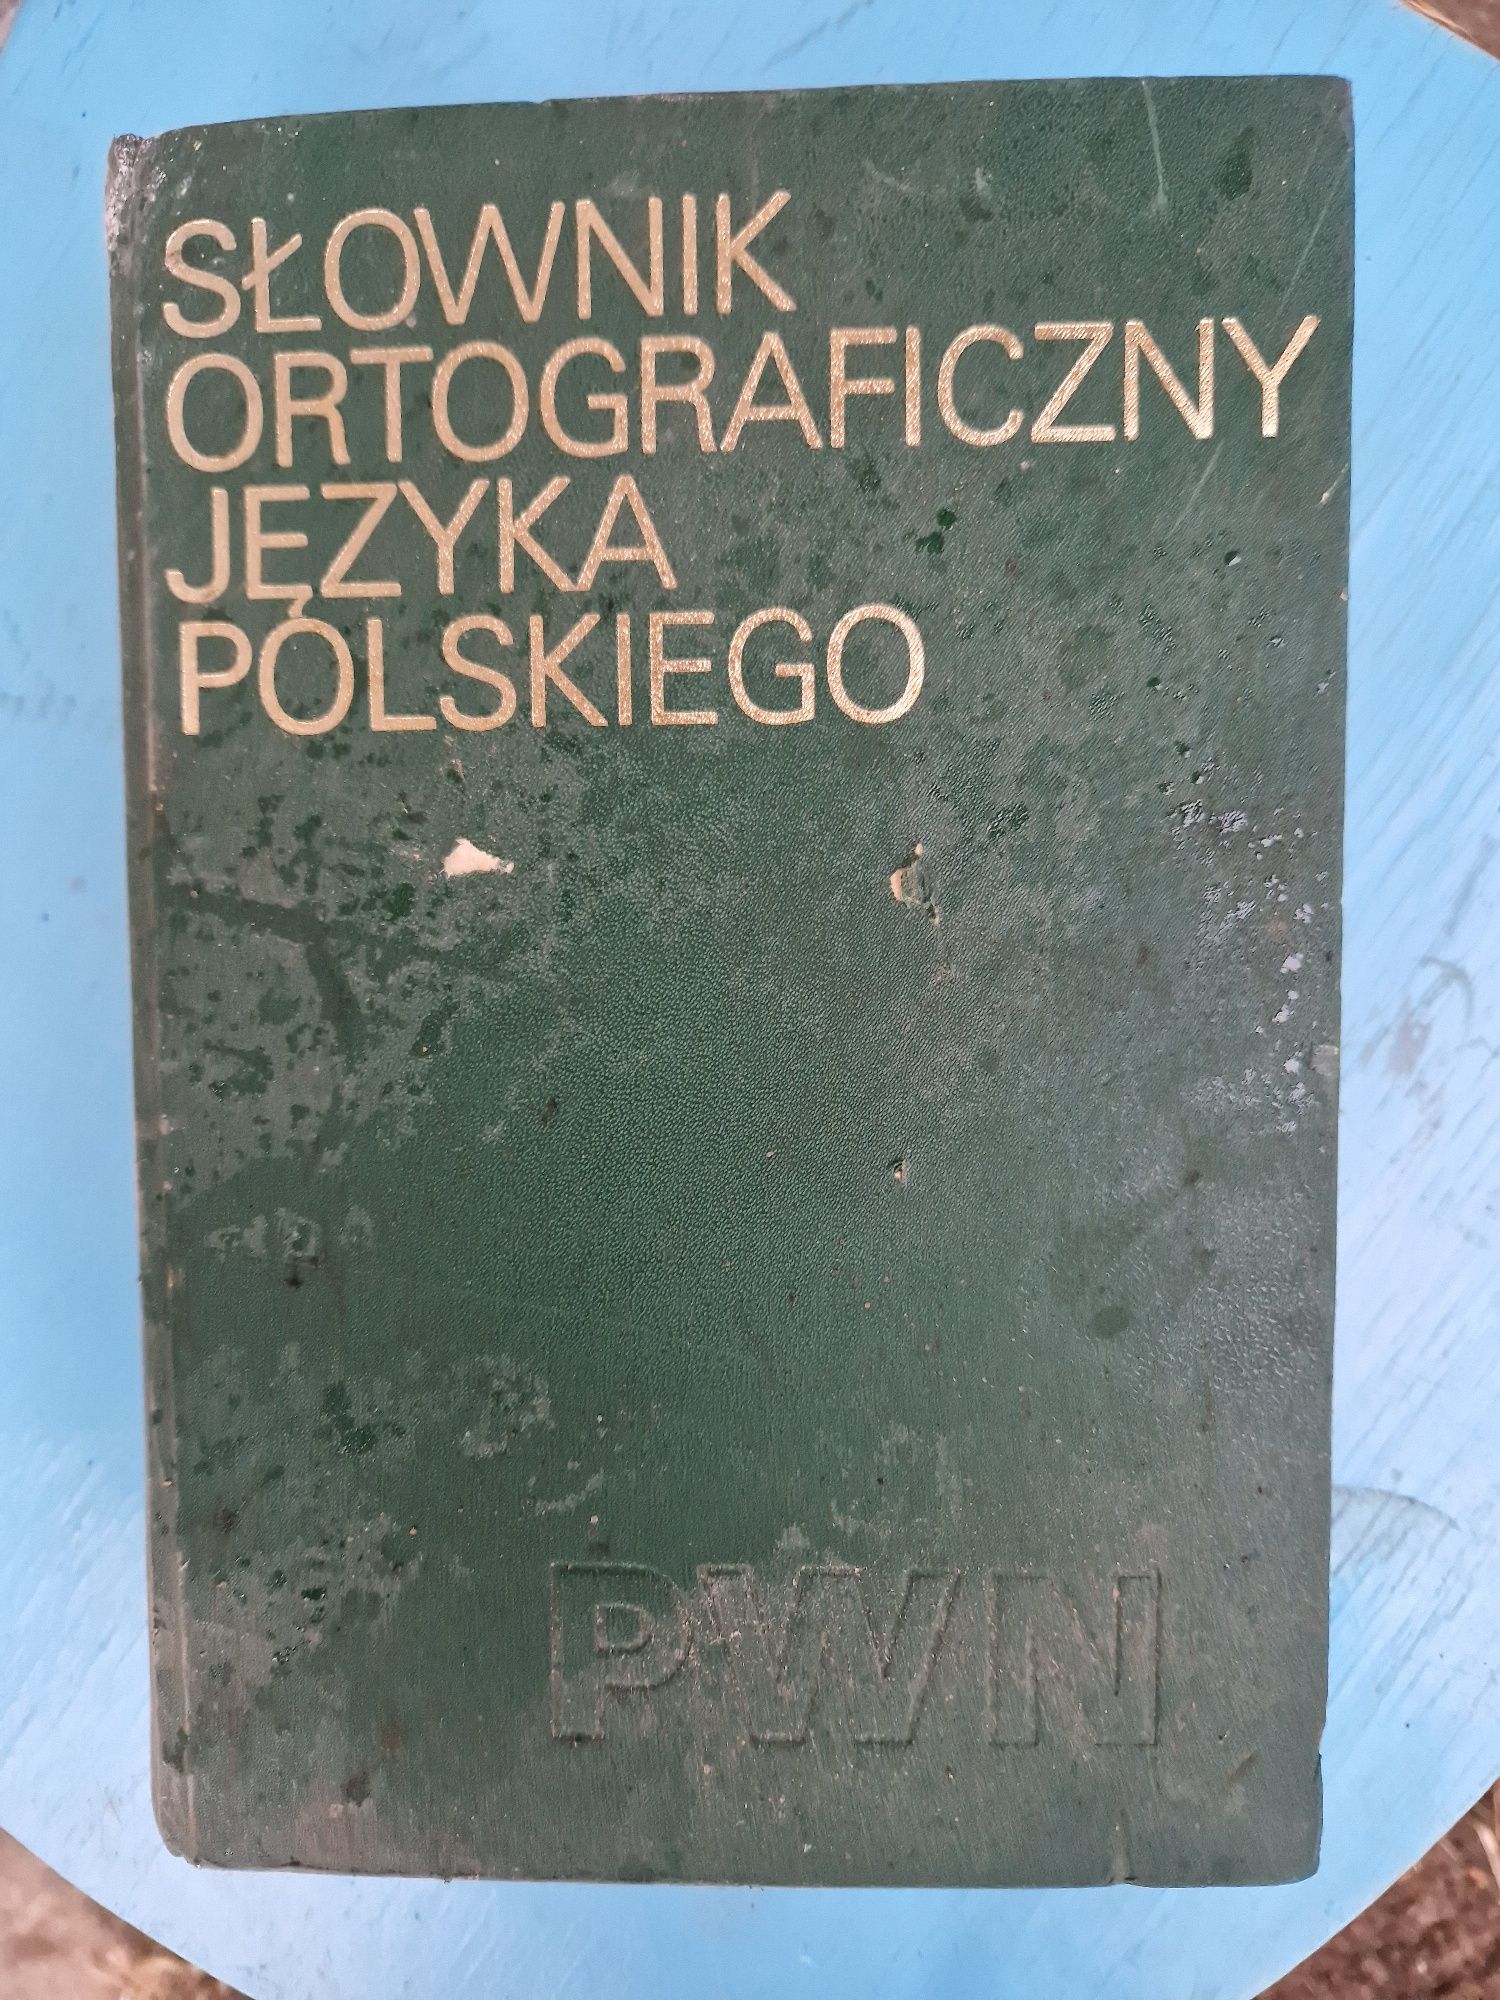 Słownik ortograficzny PWN